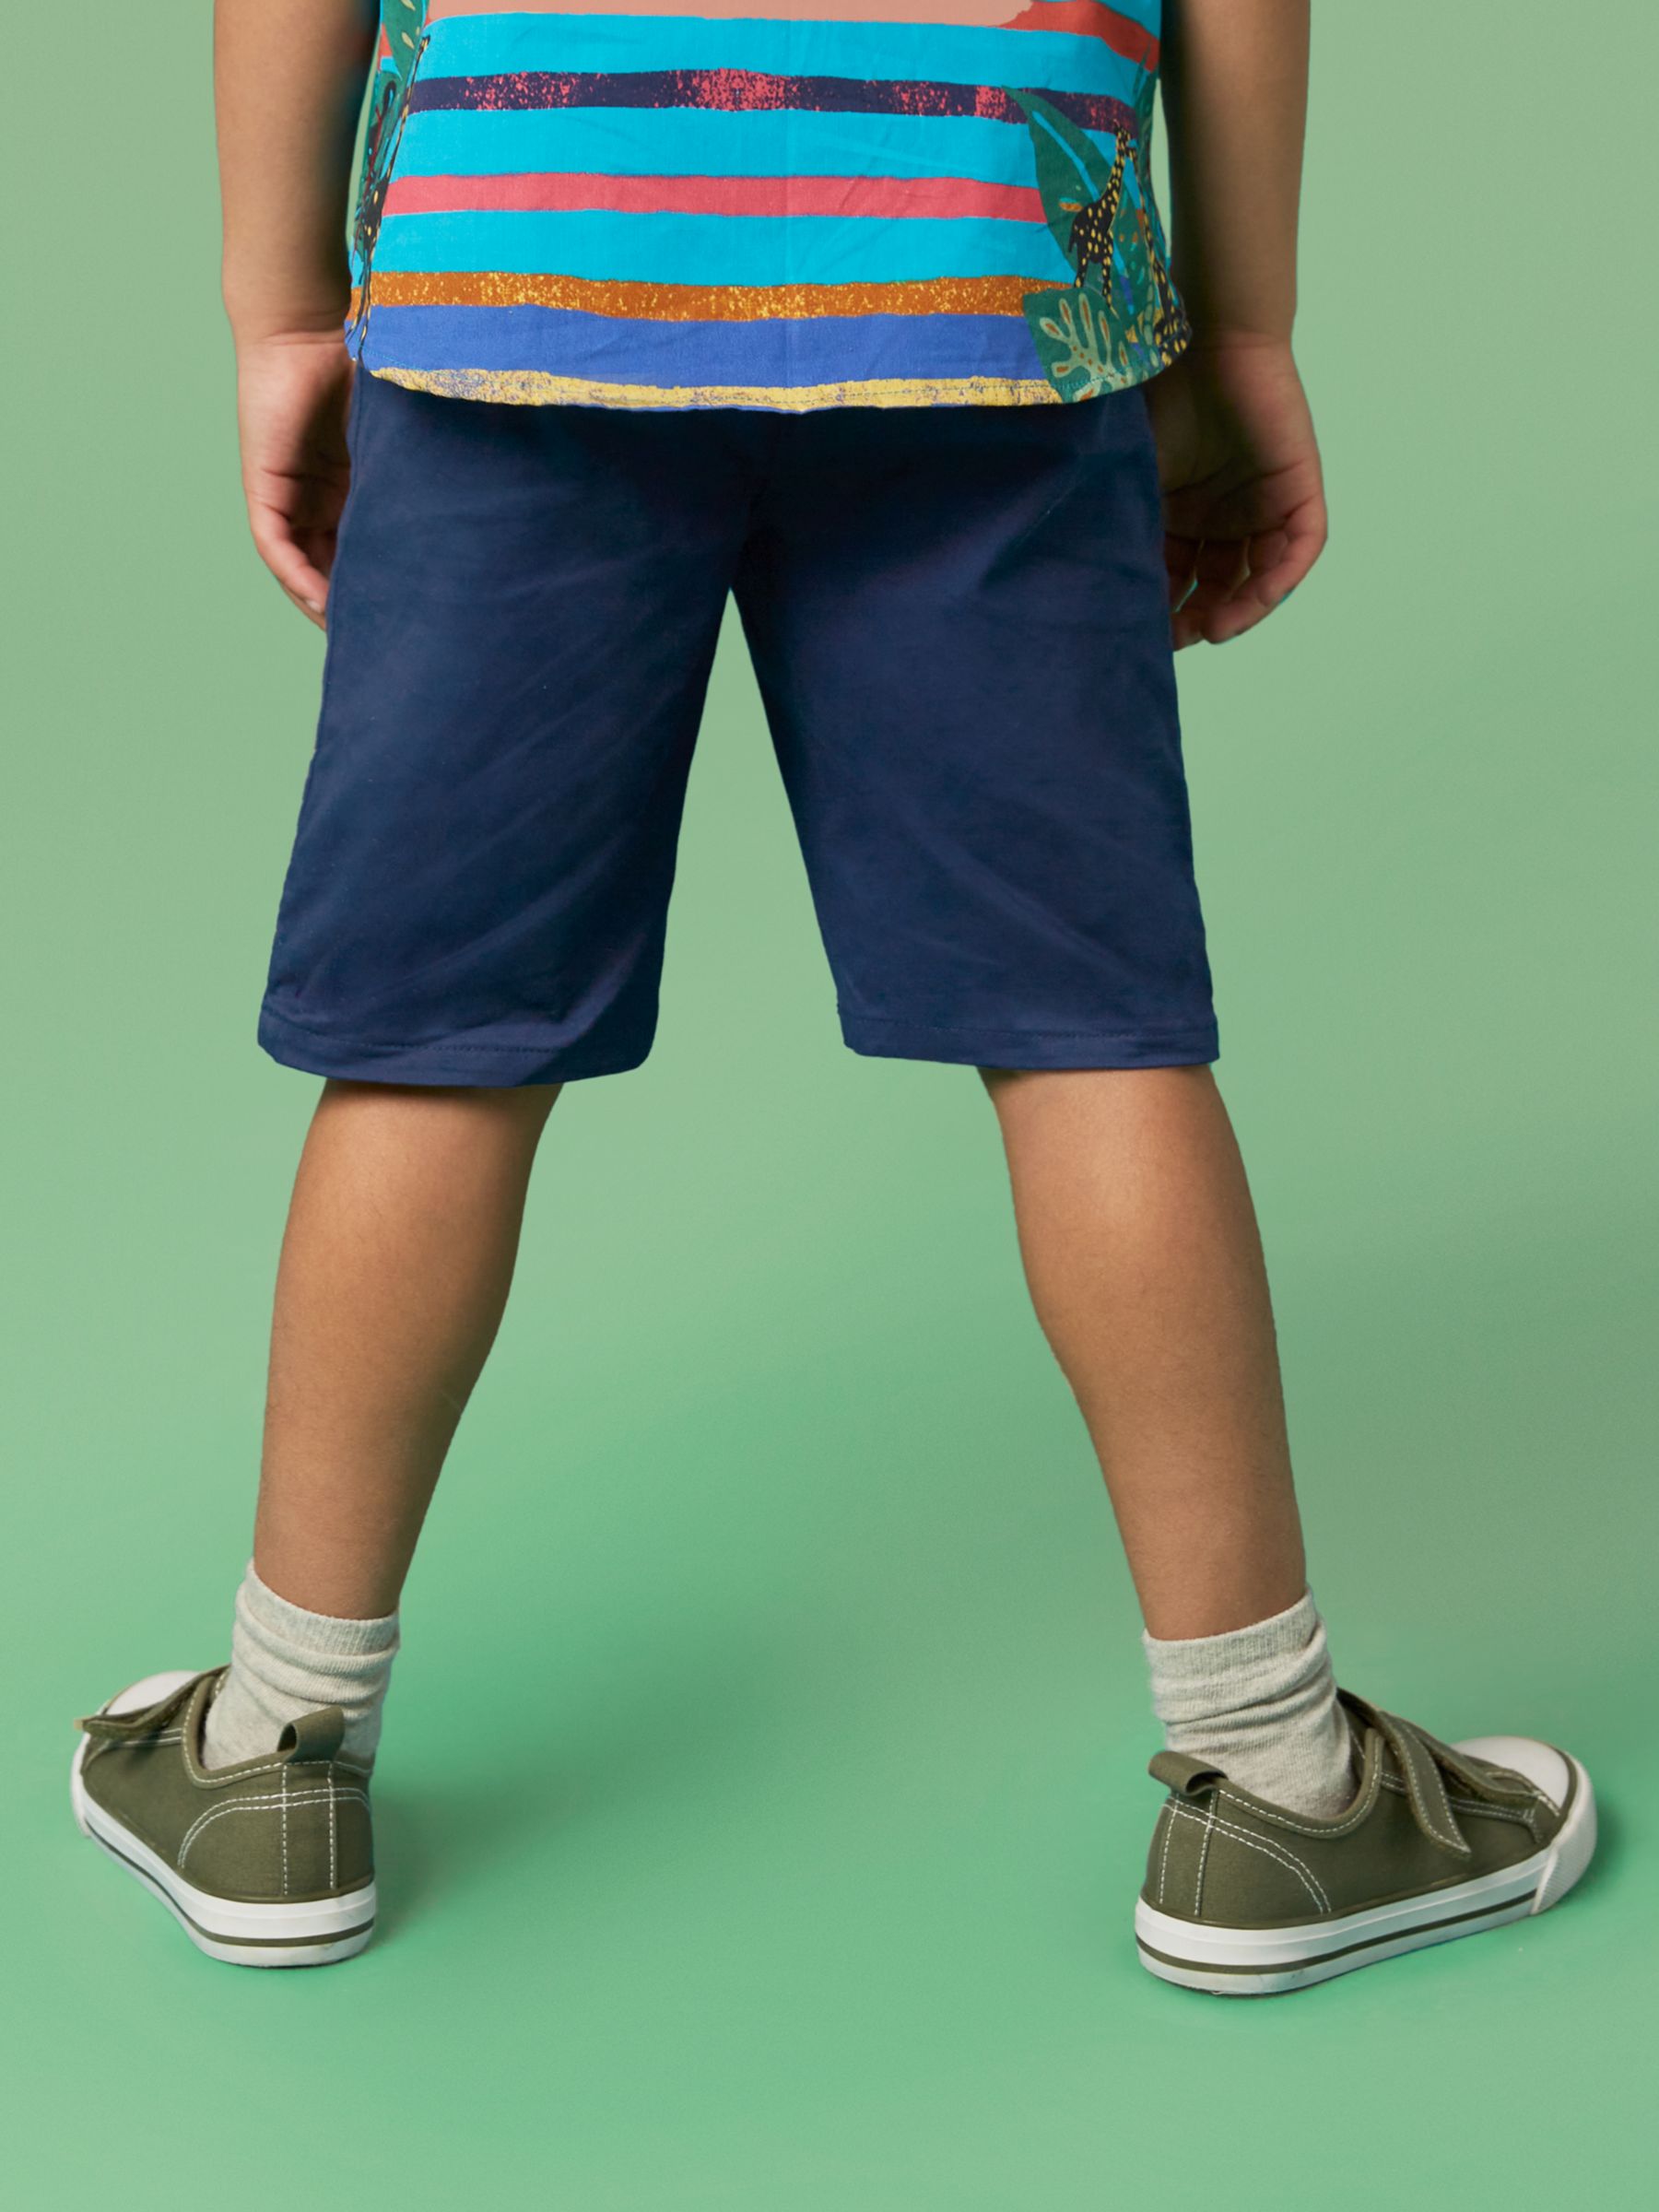 White Stuff Kids' Cole Chino Shorts, Dark Navy, 3-4 years